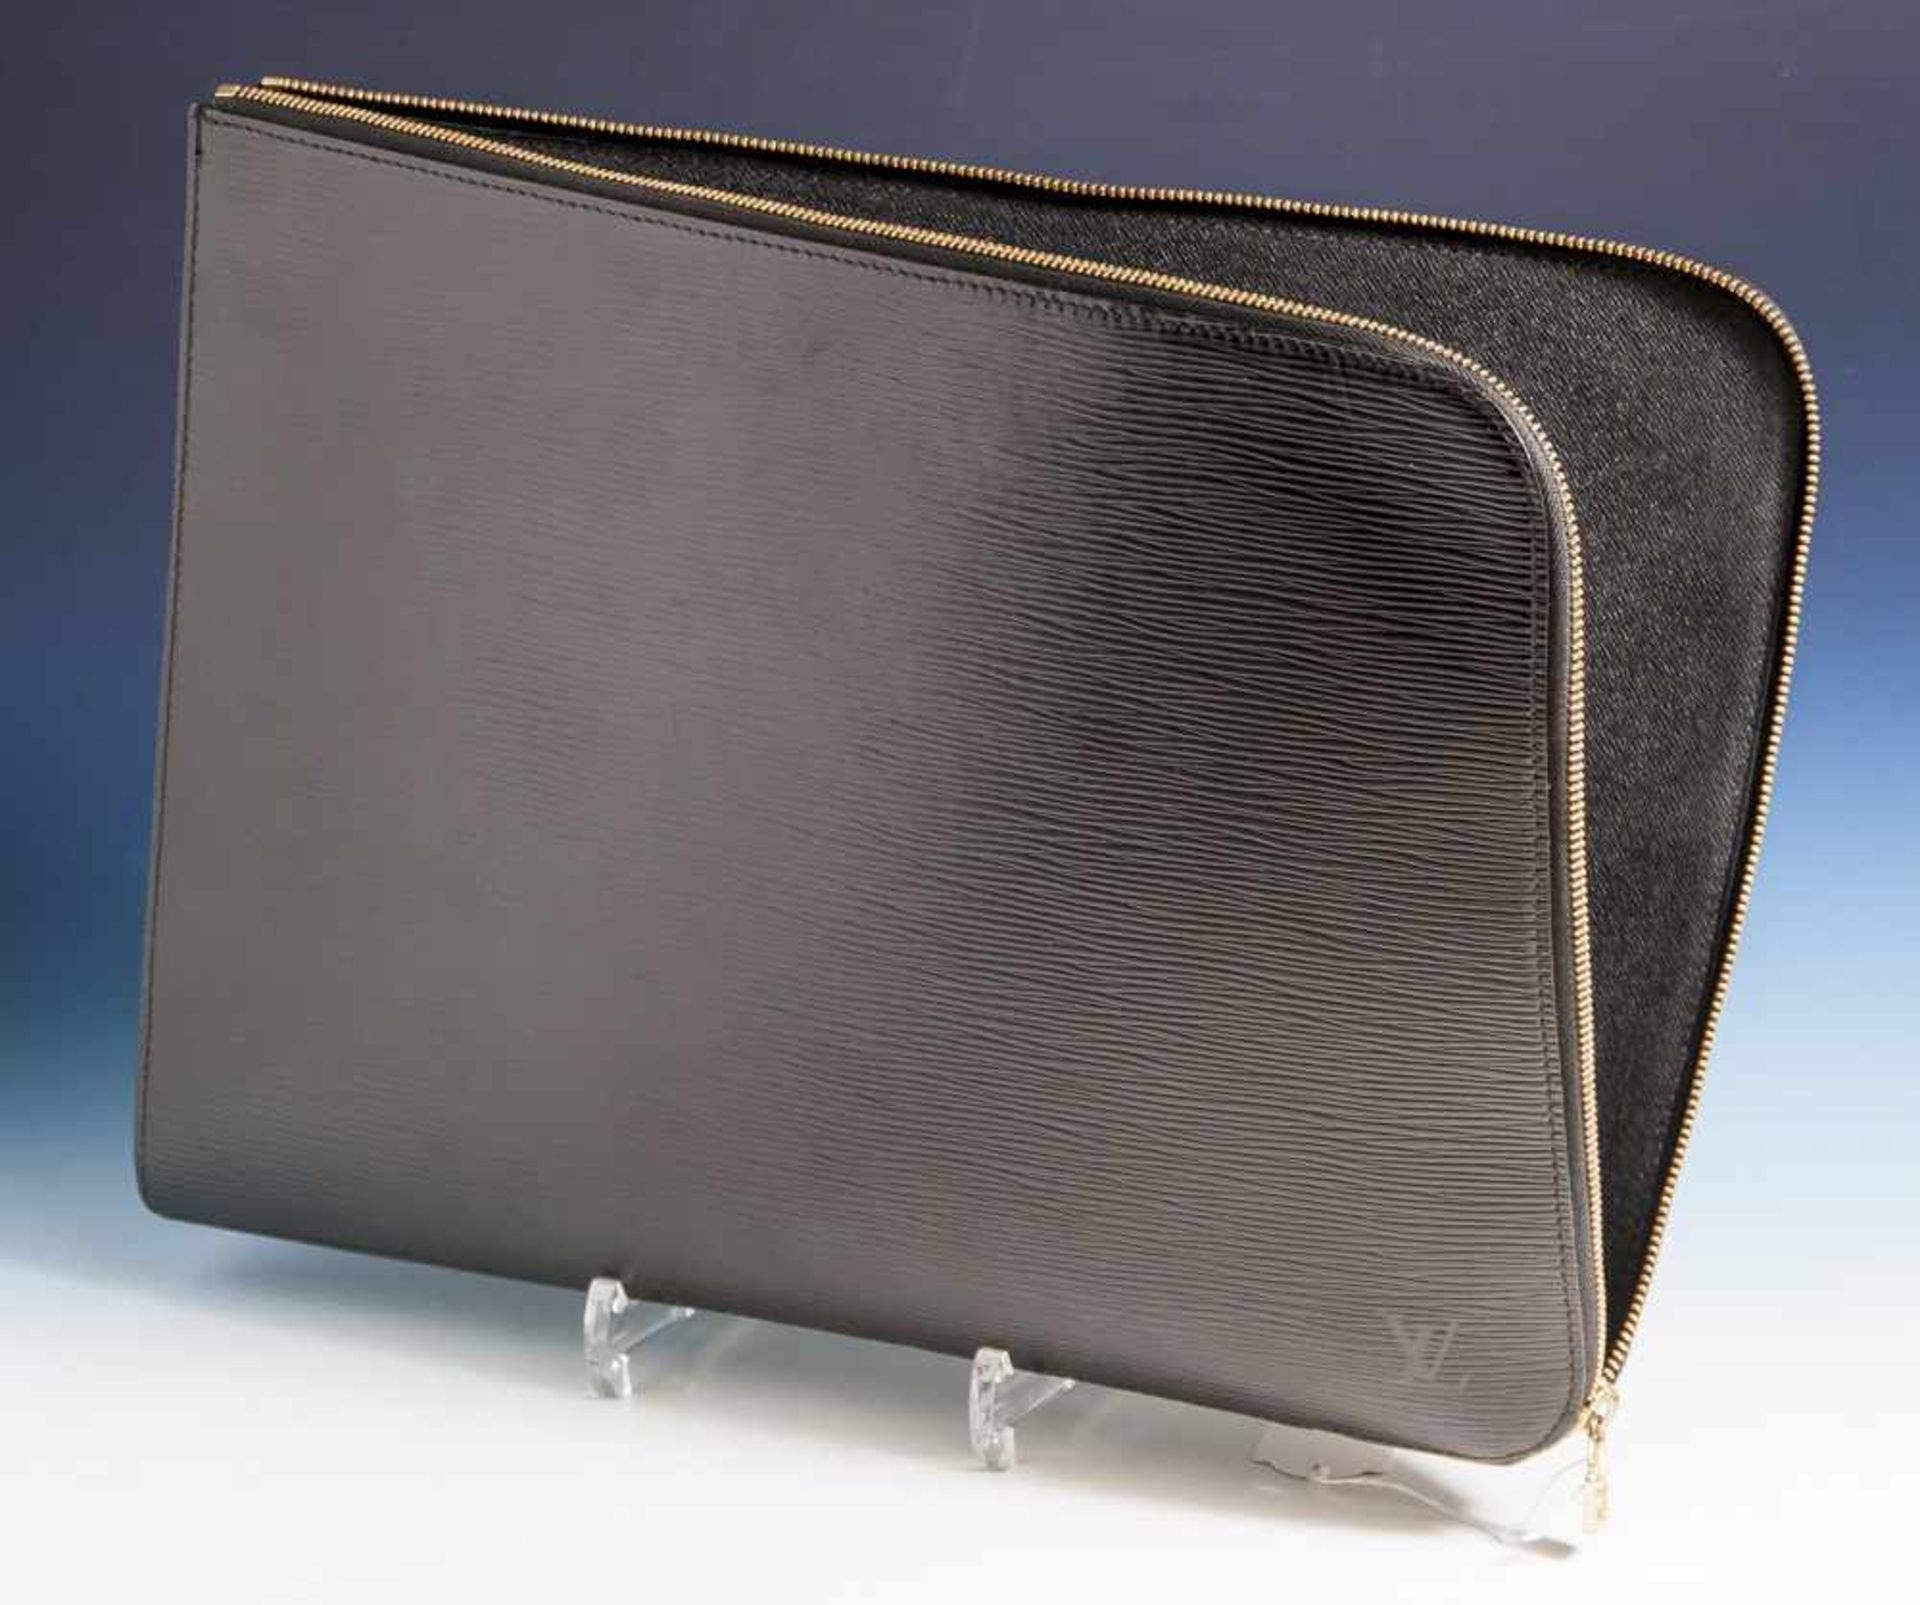 Dokumentenmappe, Louis Vuitton, geprägtes schwarzes Leder, rechteckige Tasche mitabgerundeten Ecken,